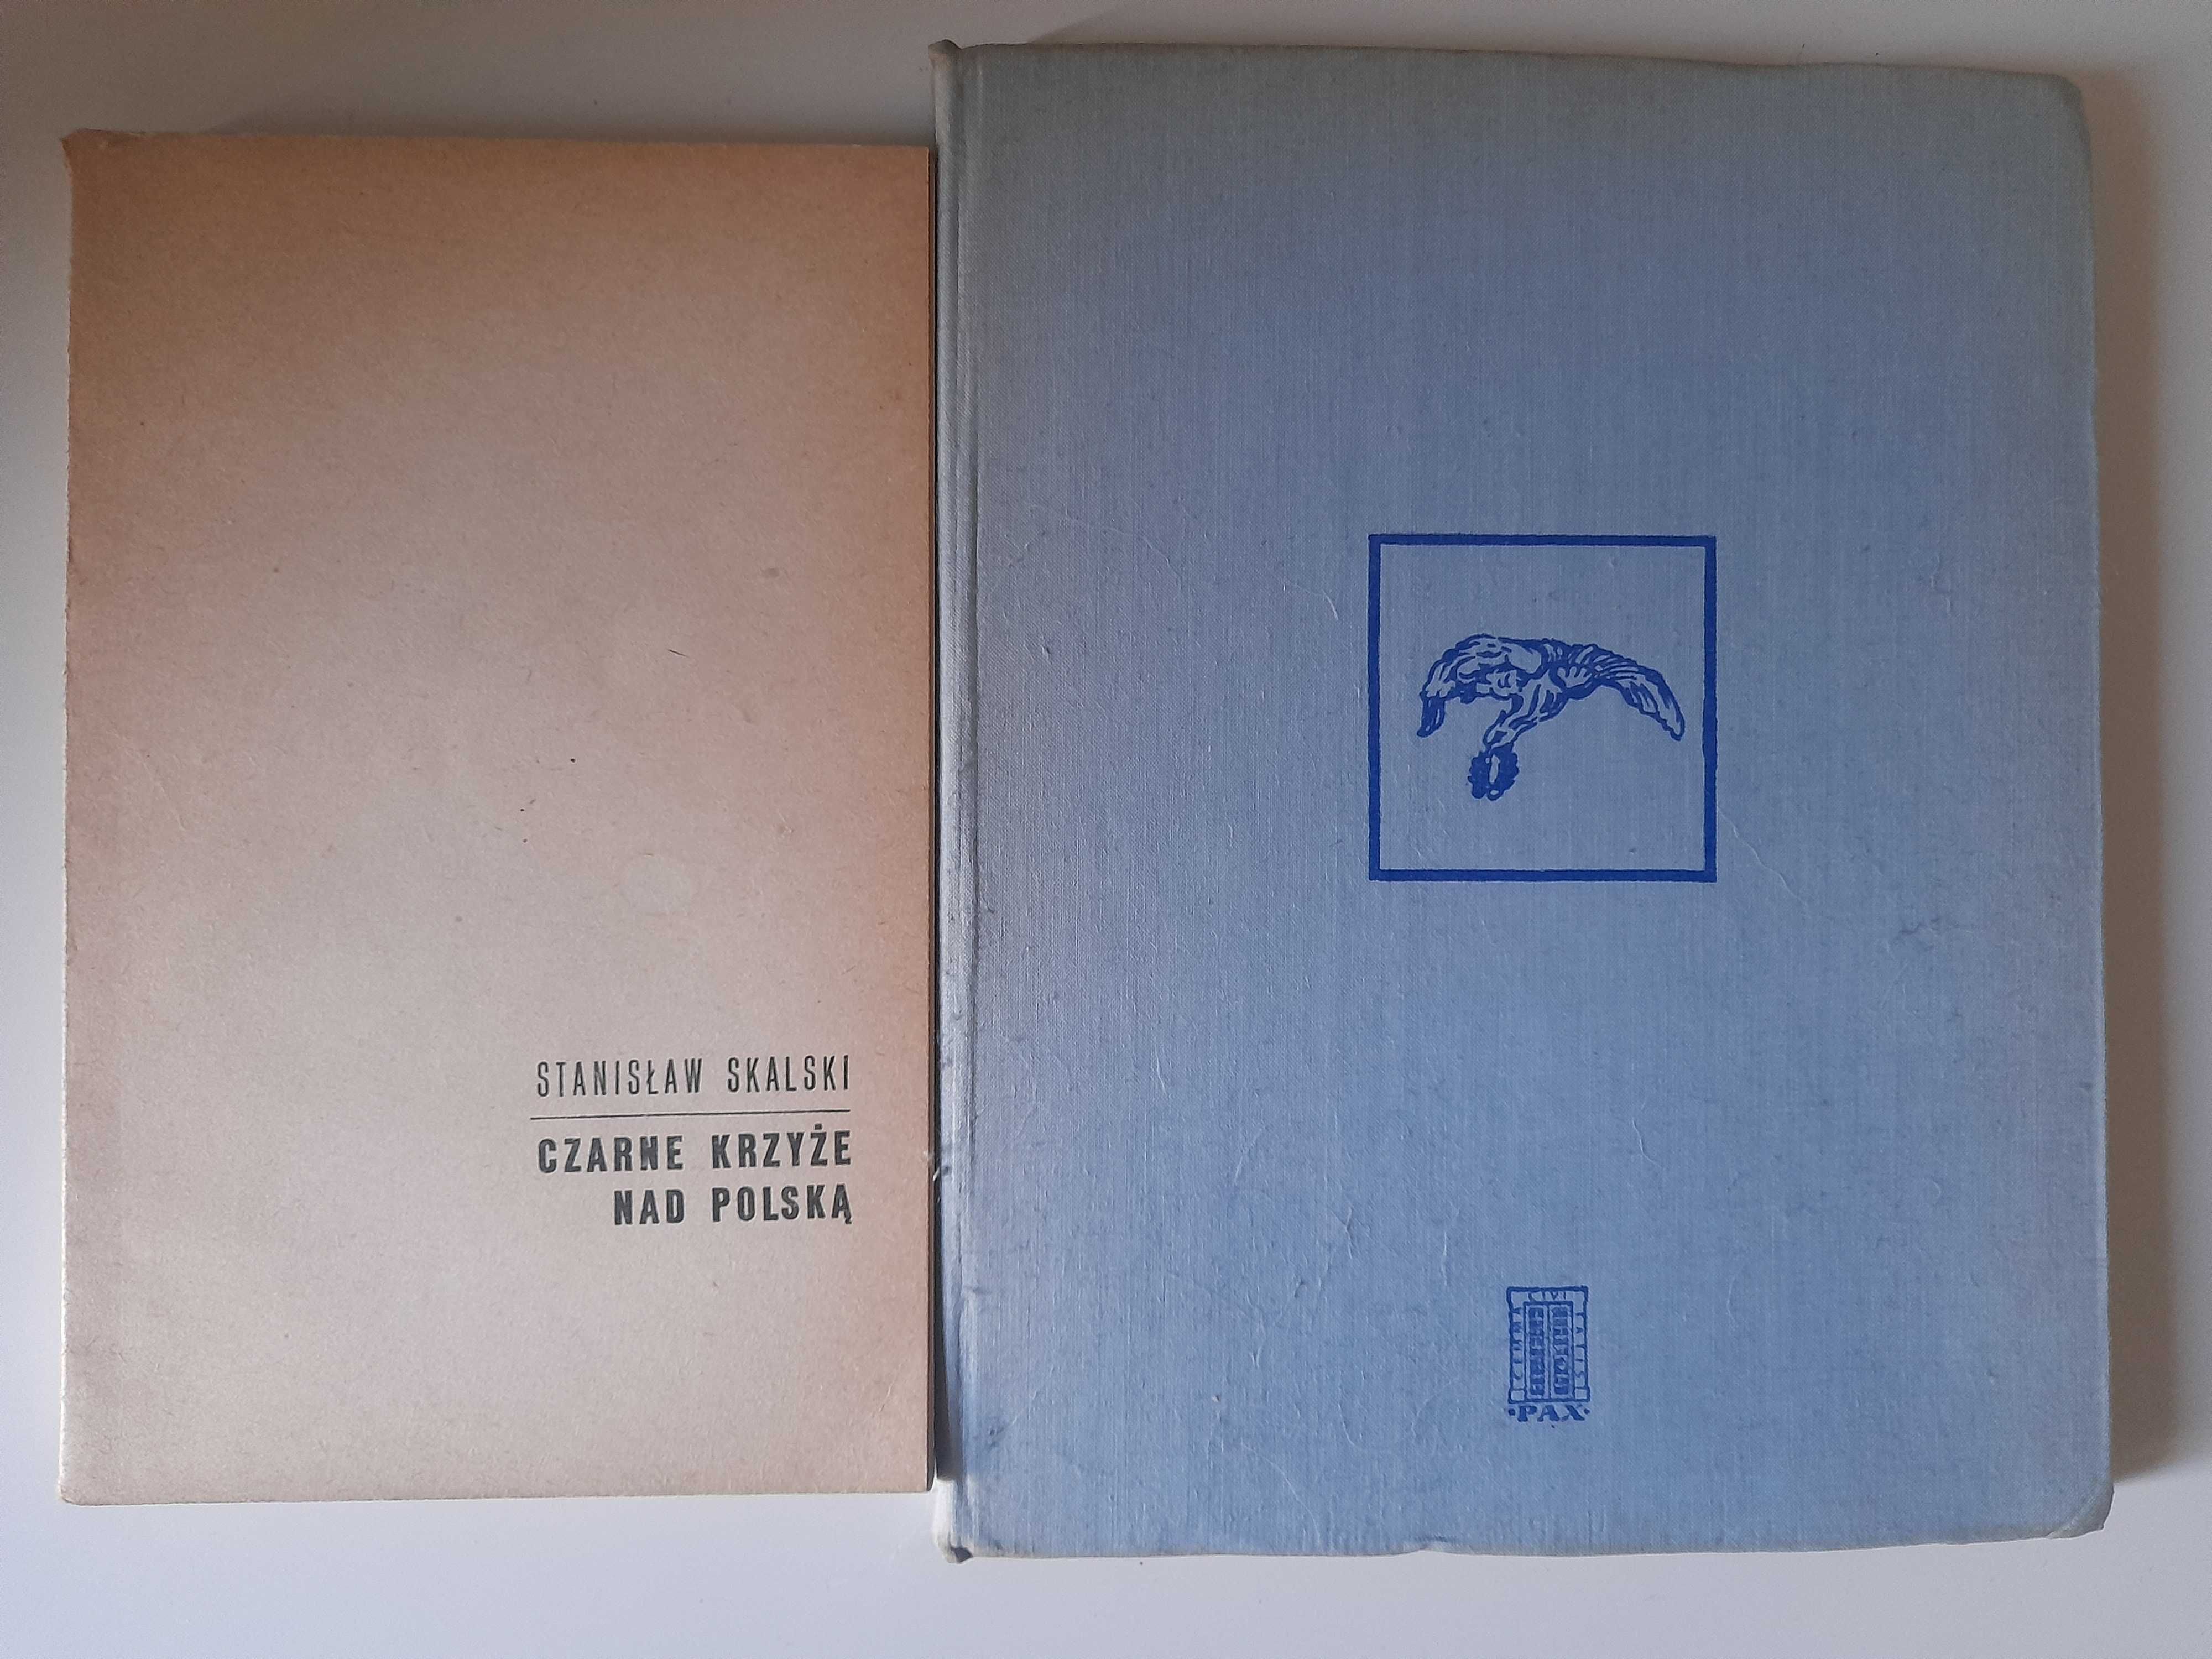 Polskie dywizjony lotnicze w Wielkiej Brytanii 1940-45 Król+2 książki